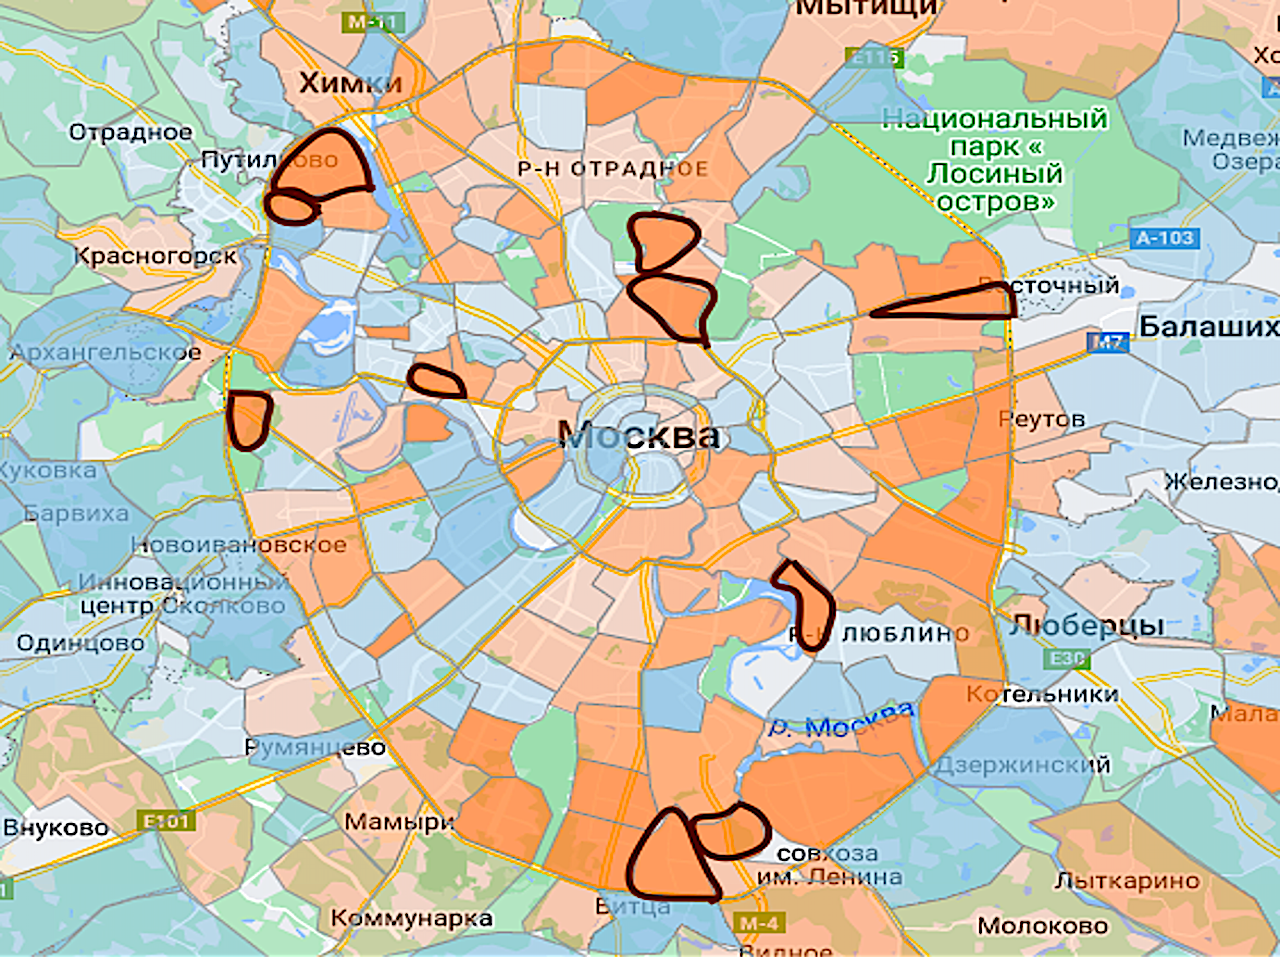 Районы Москвы с минимальным сроком продаже на карте&nbsp;